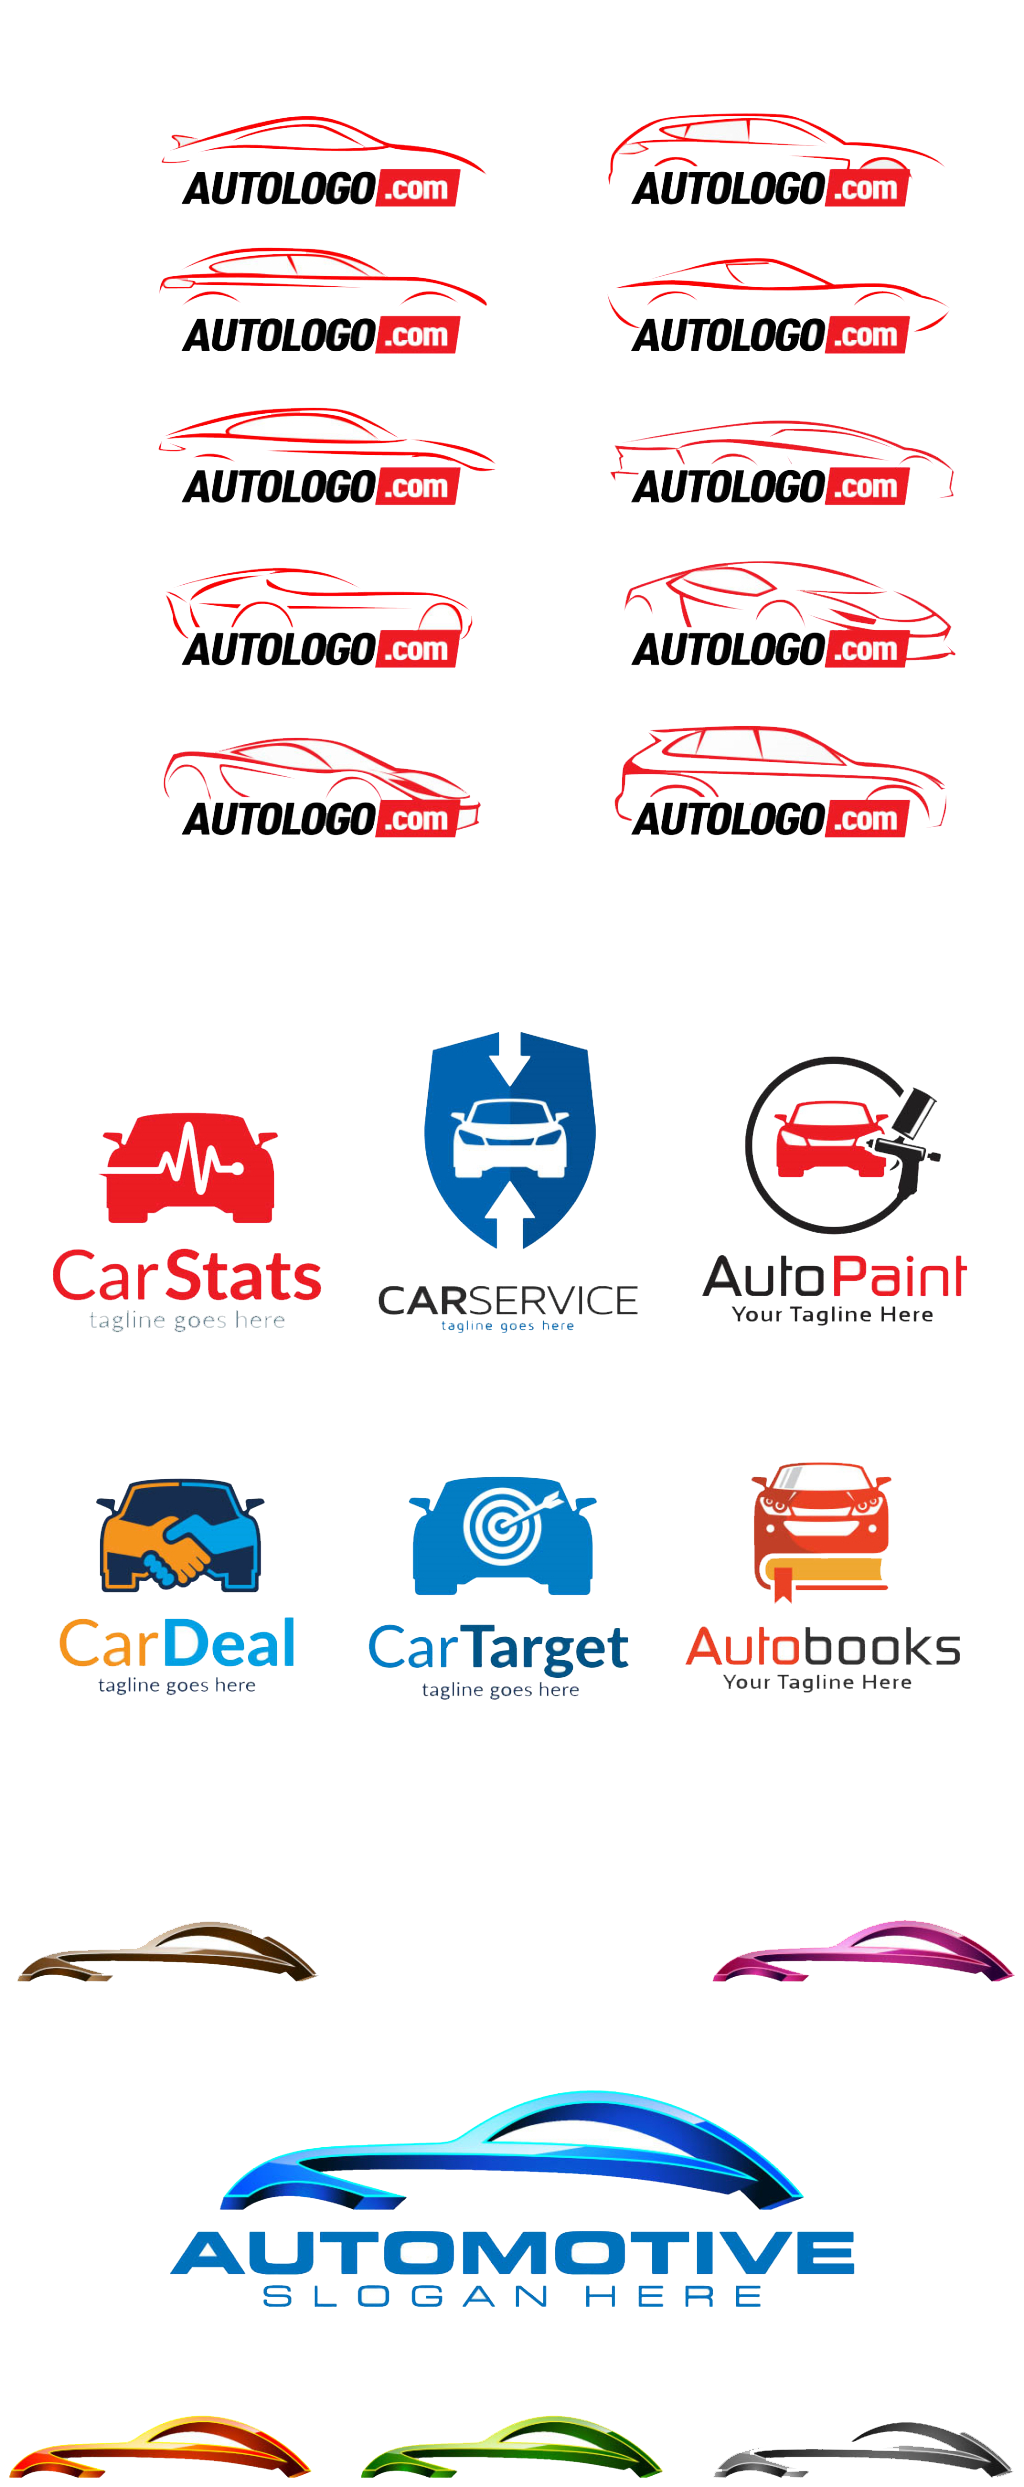 Car Cars Logo Free Download Image PNG Image